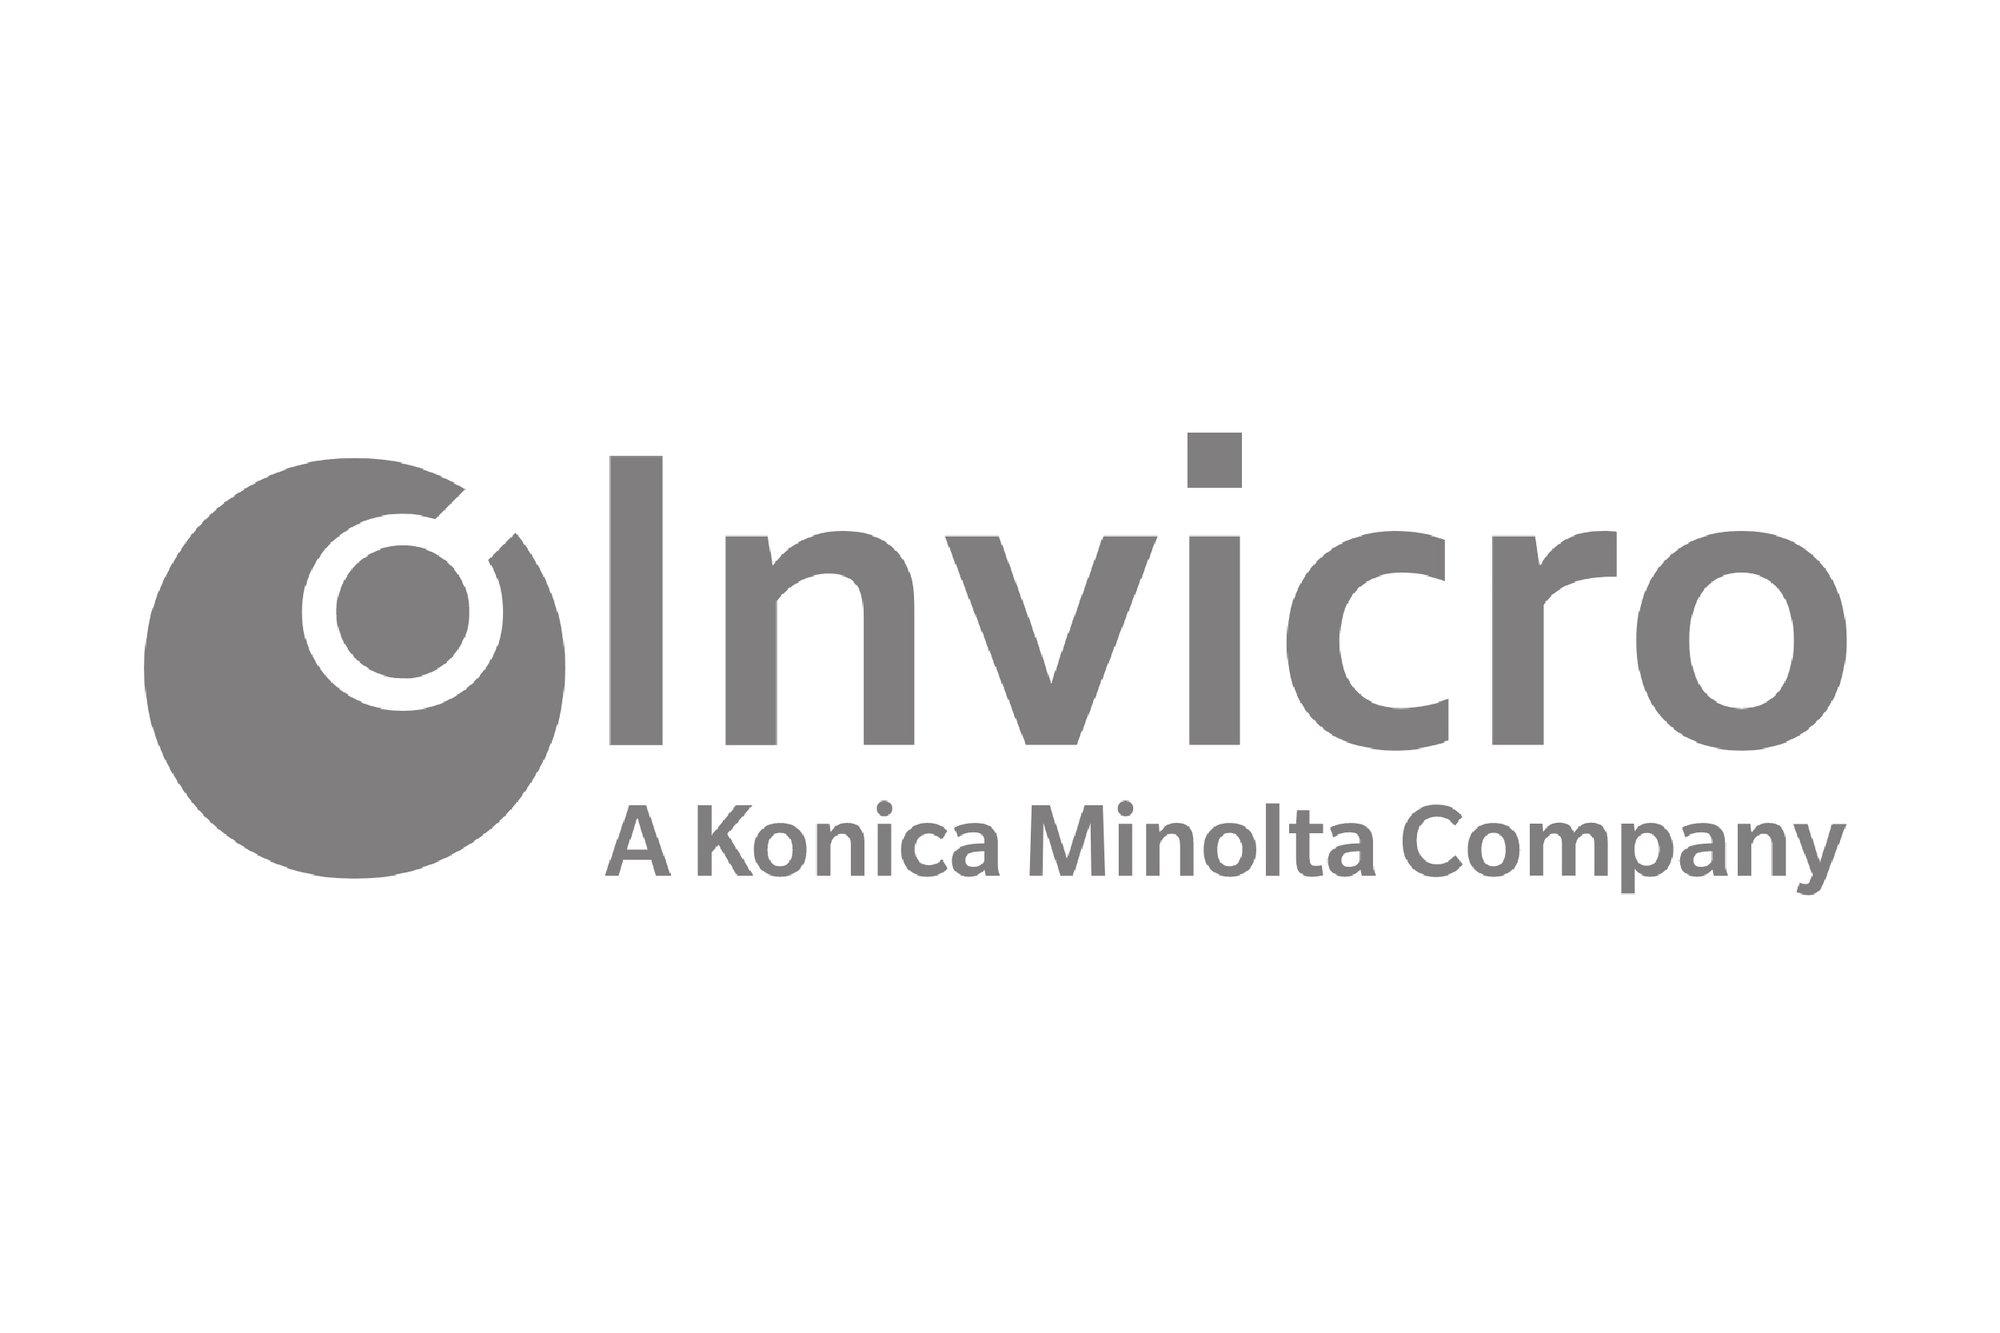 Invicro-1